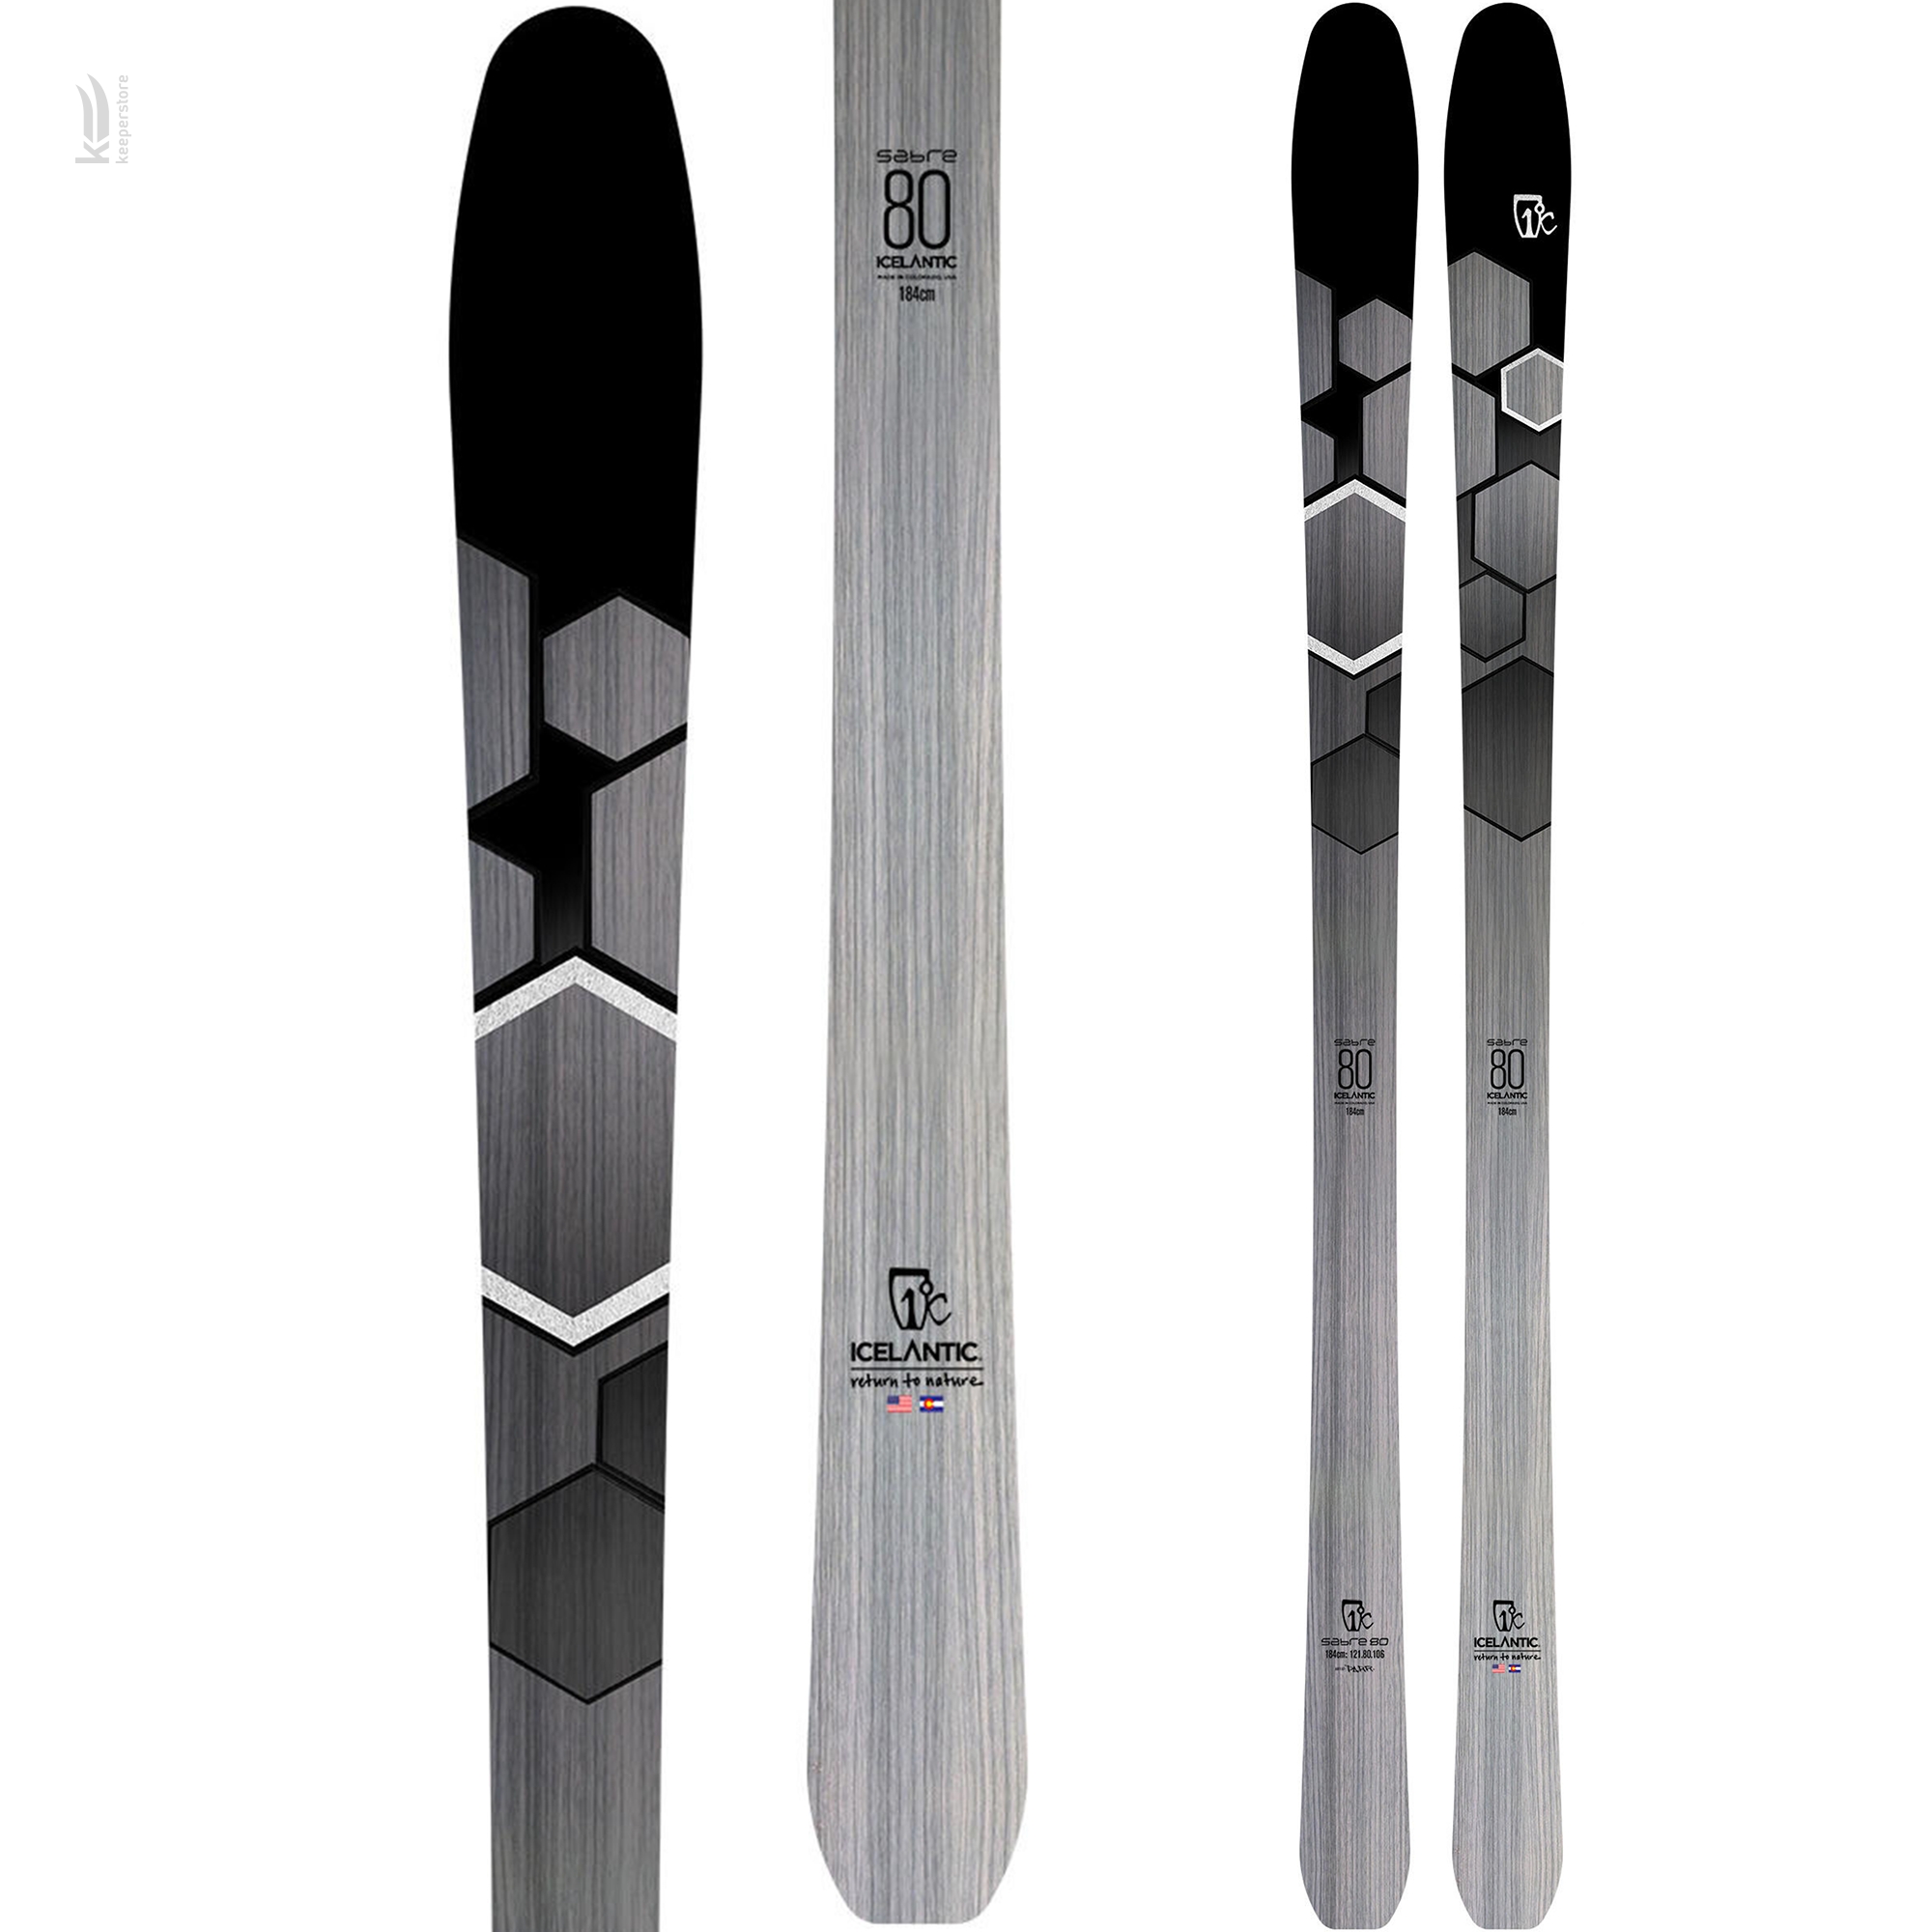 Лыжи для новичков Icelantic Sabre 80 2019/2020 174cm